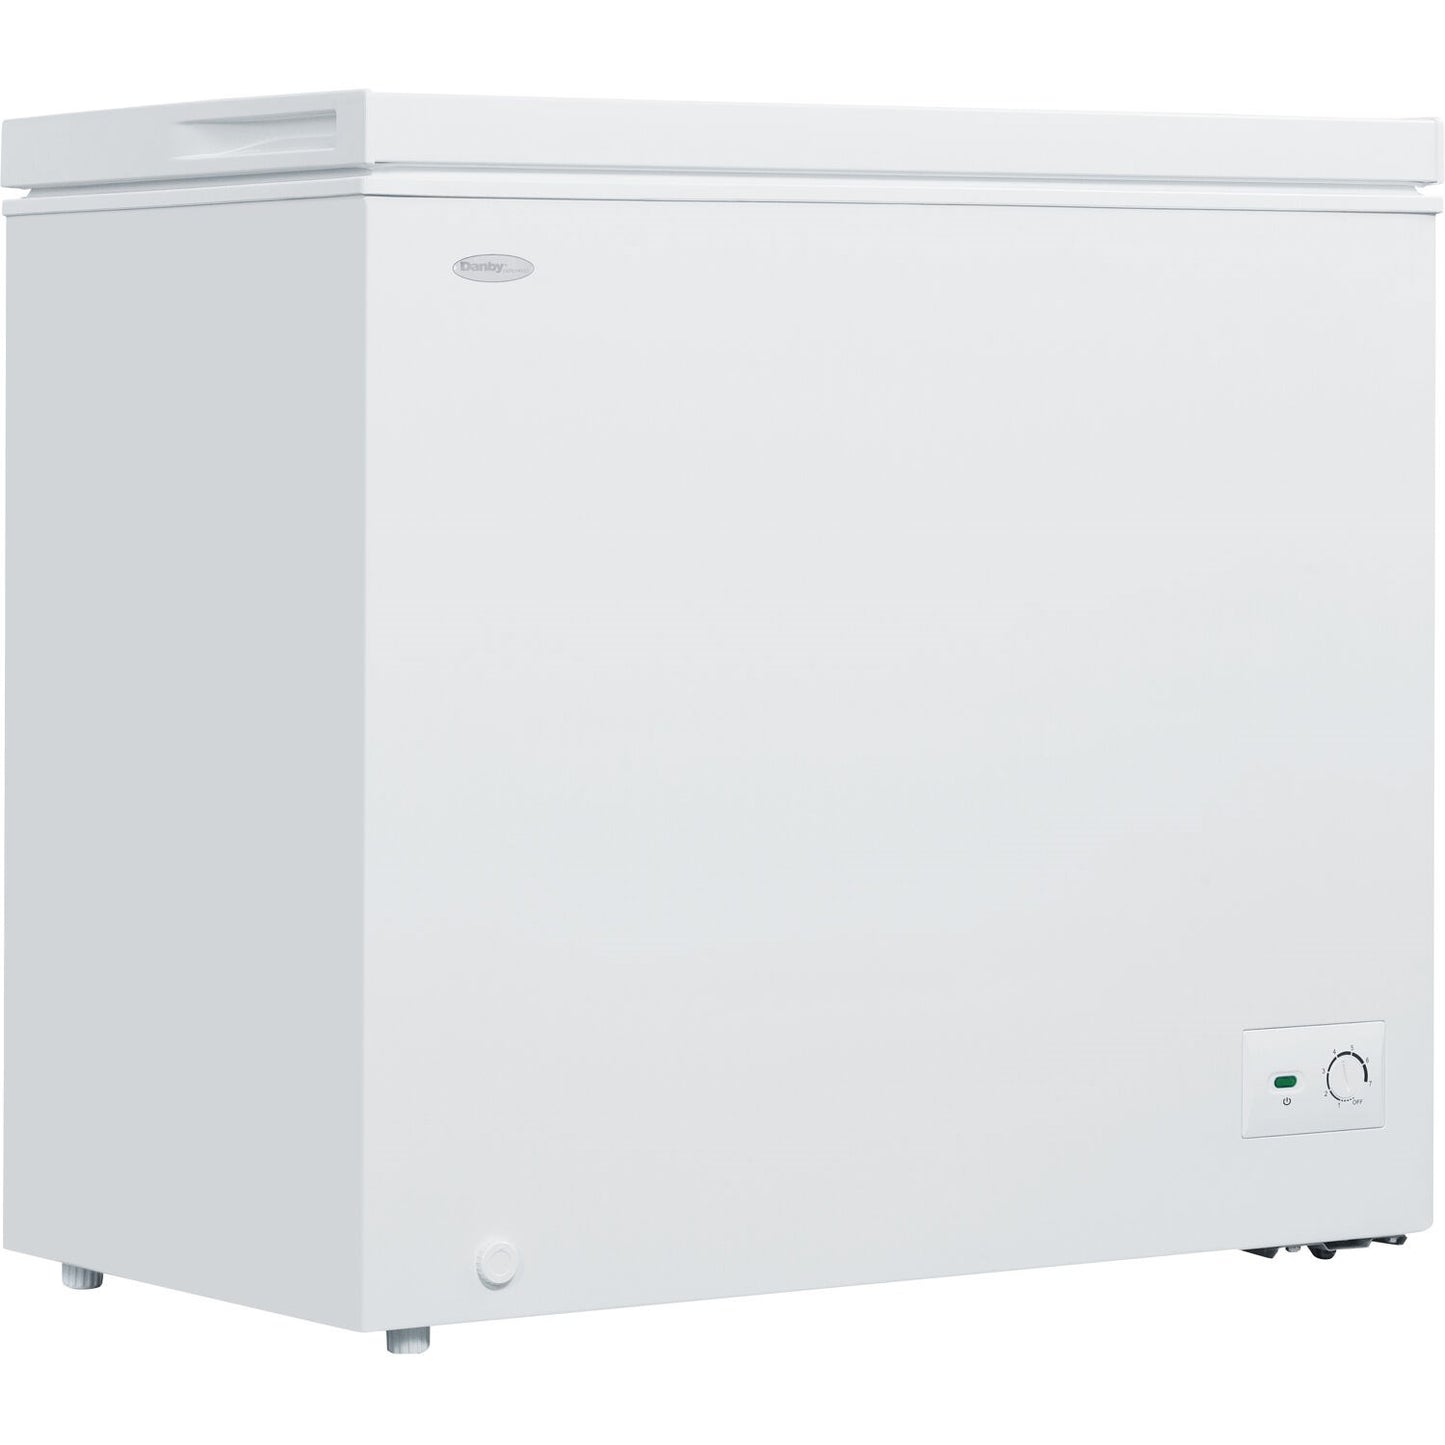 Danby 8.7 Cu. Ft Chest Freezer | Up Front Temperature Control | Energy Efficient